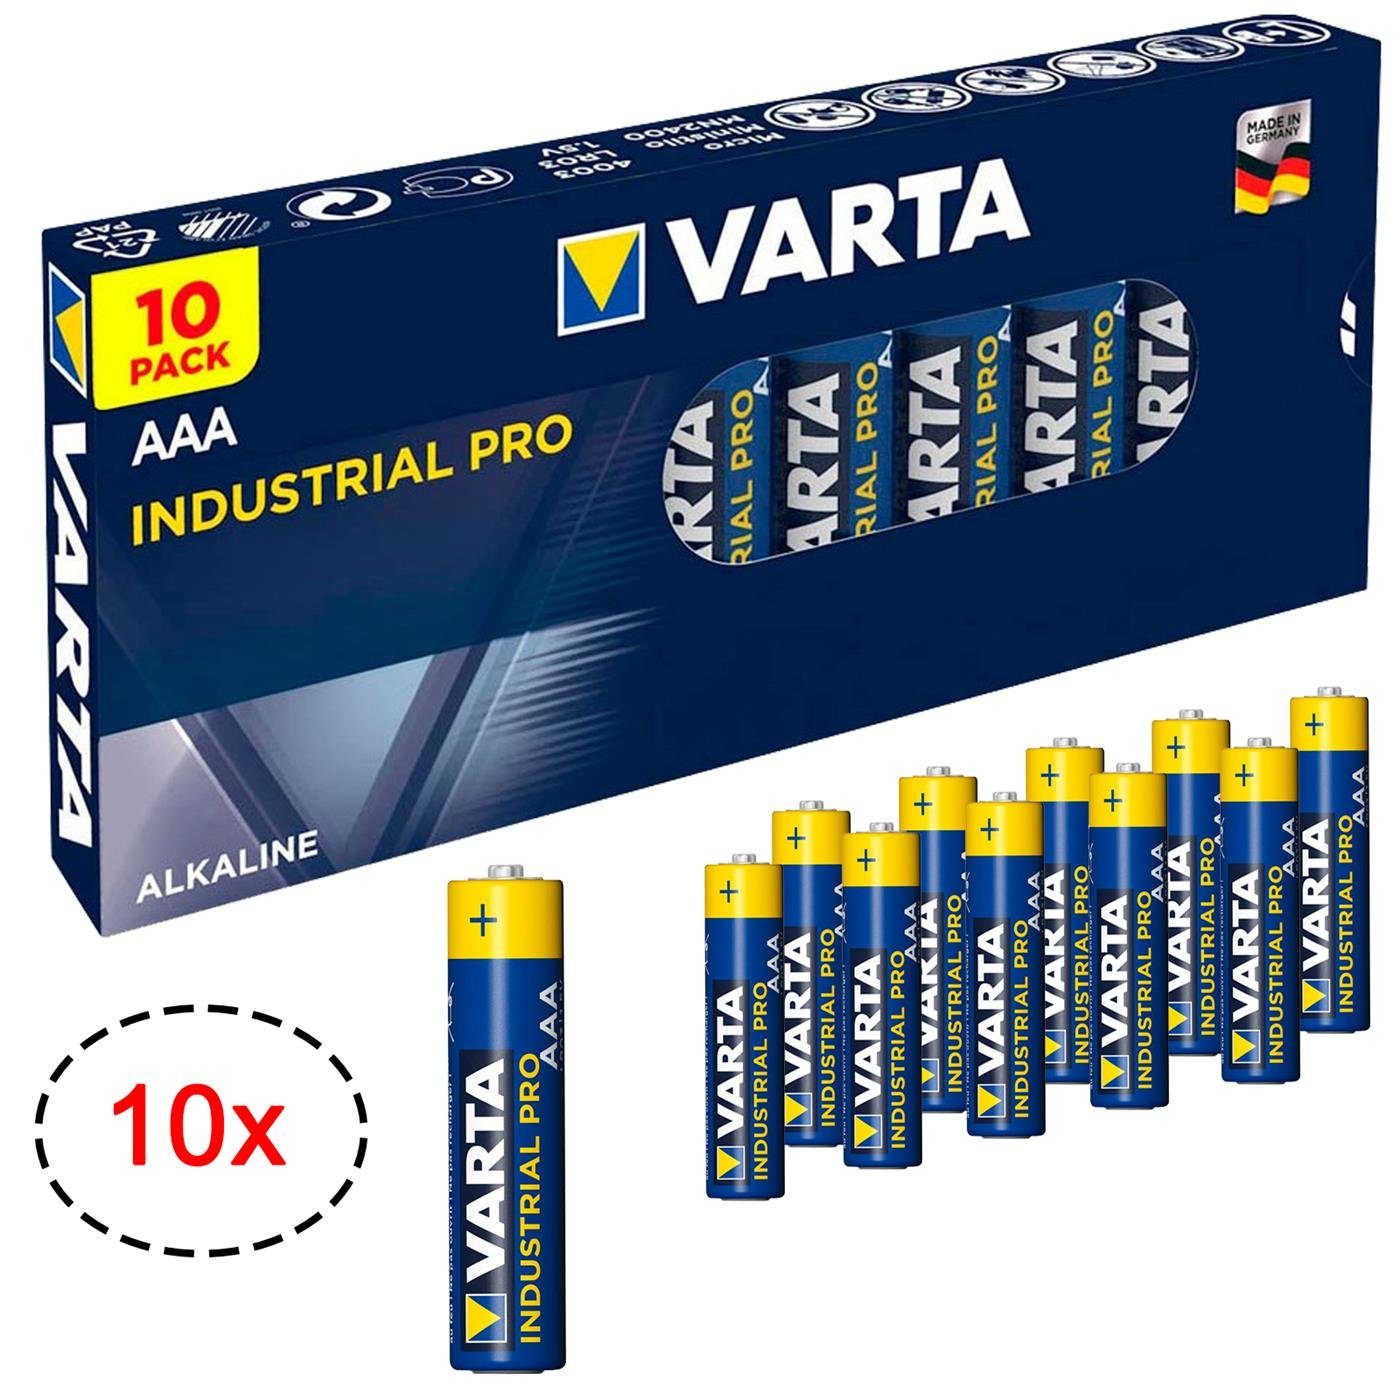 40 x Varta Industrial PRO LR3 / AAA 4003 batteries (box)